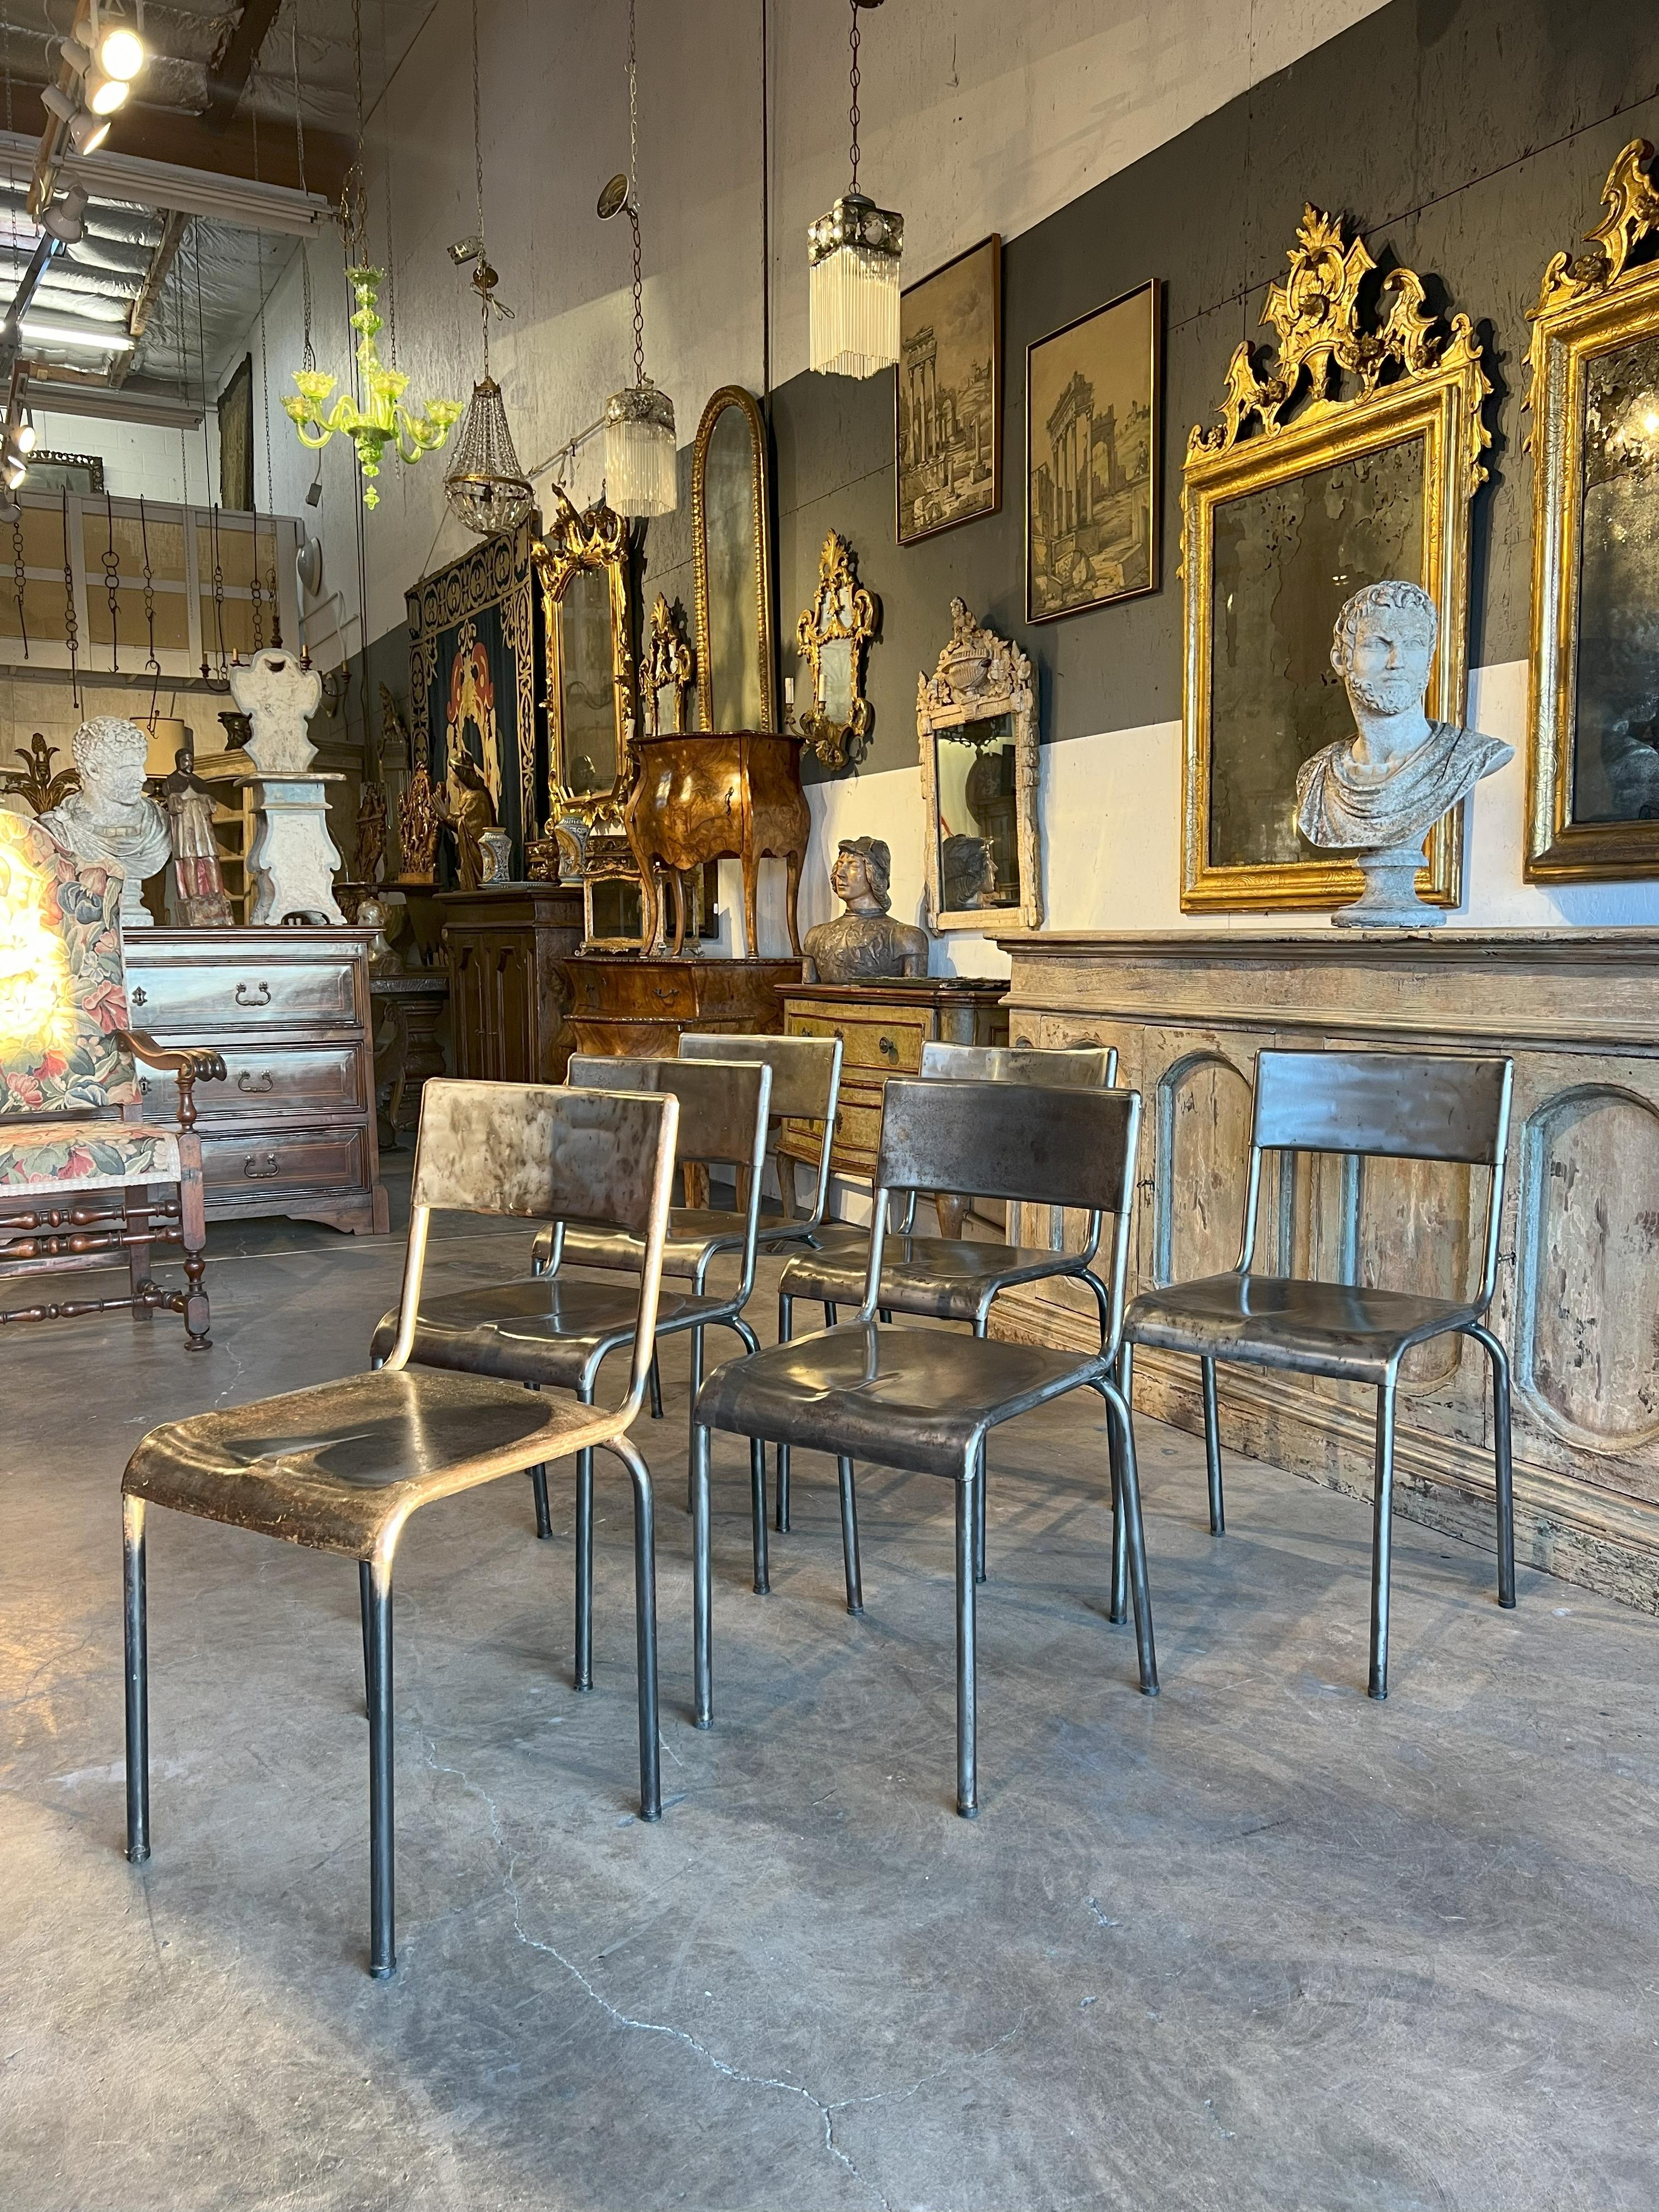 Dieses Set aus sechs Stühlen wurde direkt aus Parma, dem Zentrum Italiens, importiert und im klassischen Industriestil um 1930 gefertigt. 
Wahrscheinlich stammen sie aus einer Schule oder einem Theater.
Diese Stühle haben einen modernen